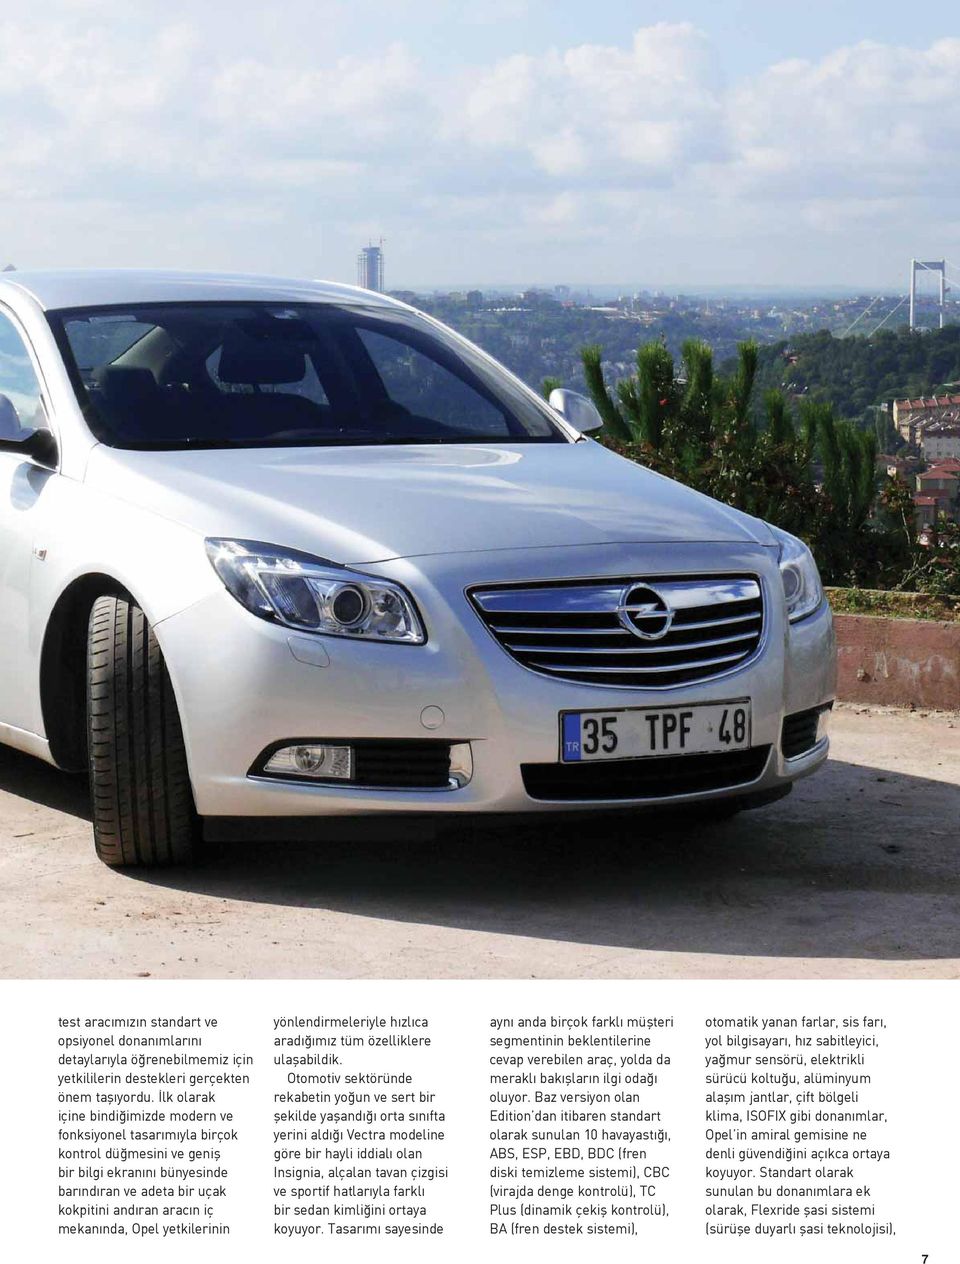 Opel yetkilerinin yönlendirmeleriyle hızlıca aradığımız tüm özelliklere ulaşabildik.